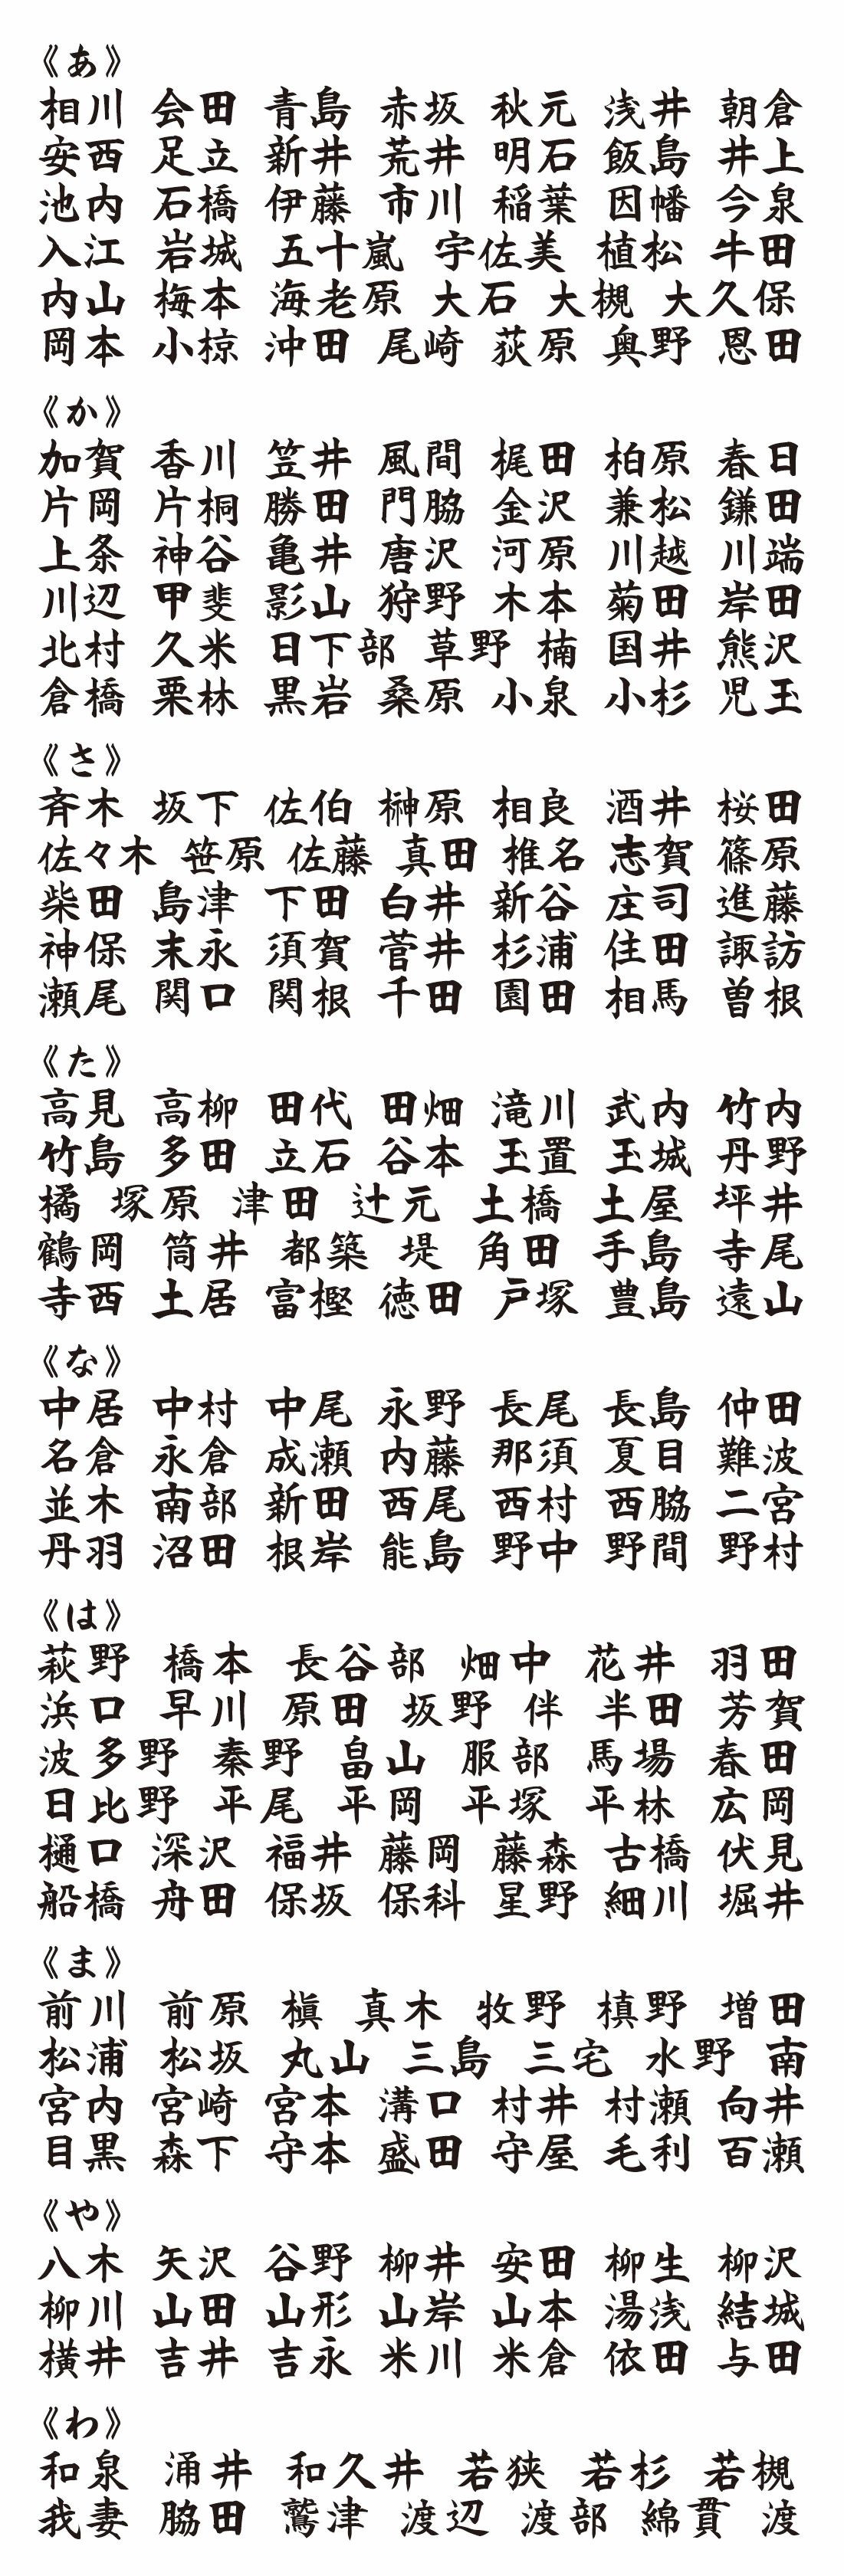 表札 書体 おすすめ 人気 漢字 表和19